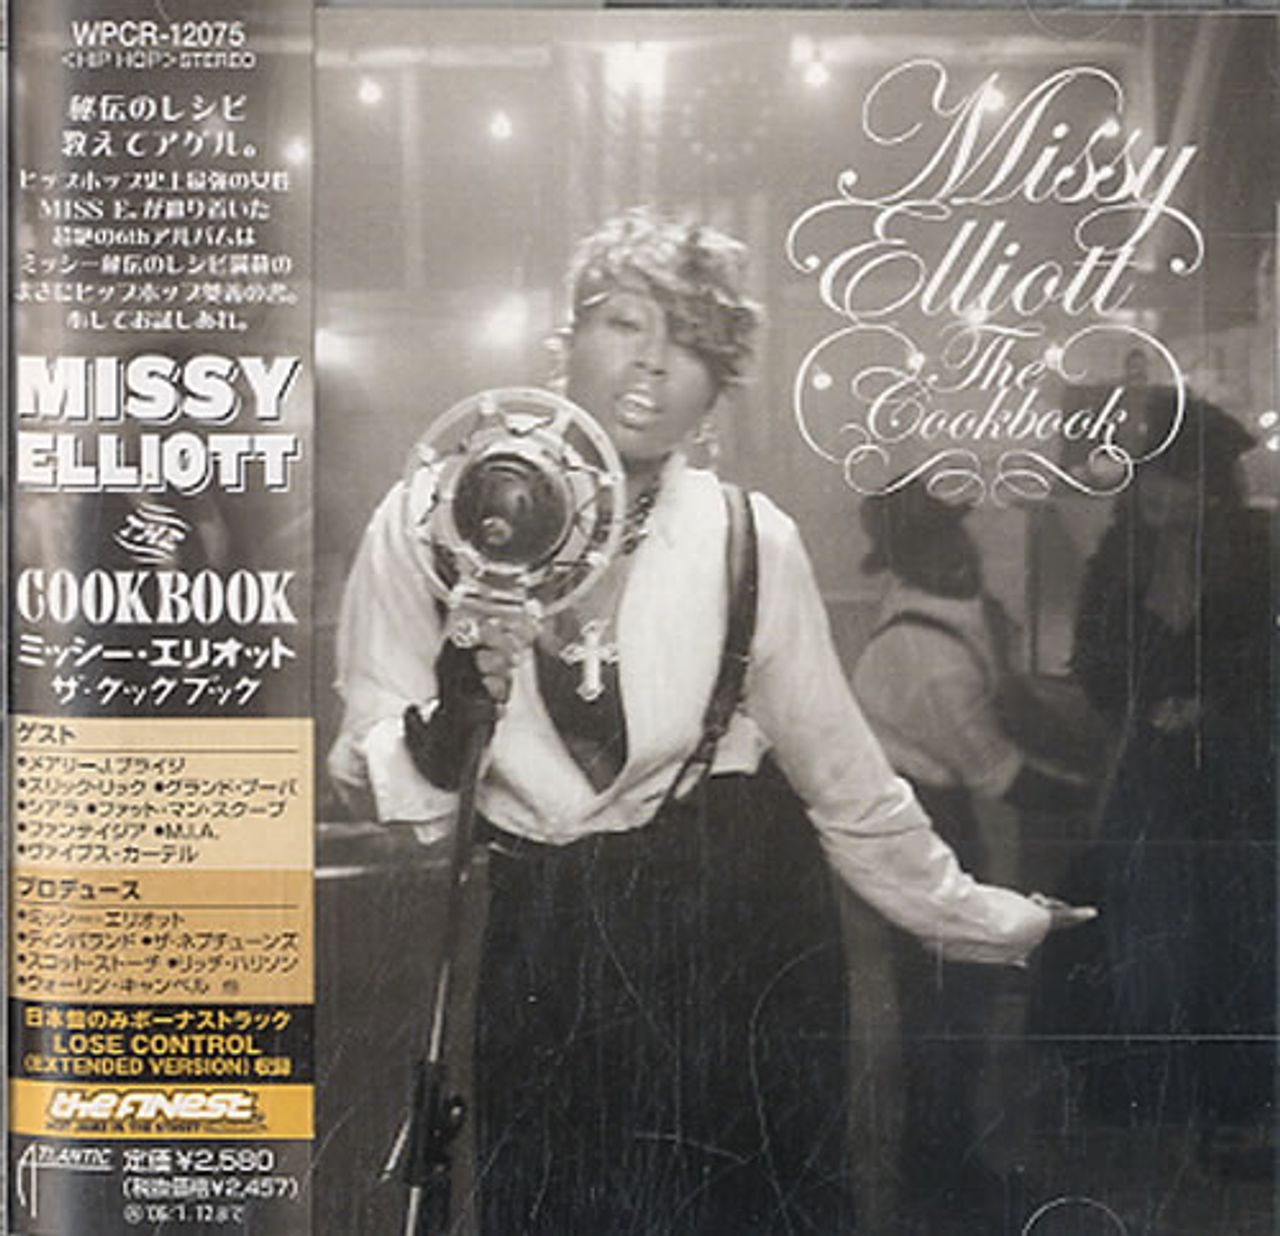 Missy Misdemeanor Elliott The Cookbook Japanese CD album (CDLP) WPCR12075